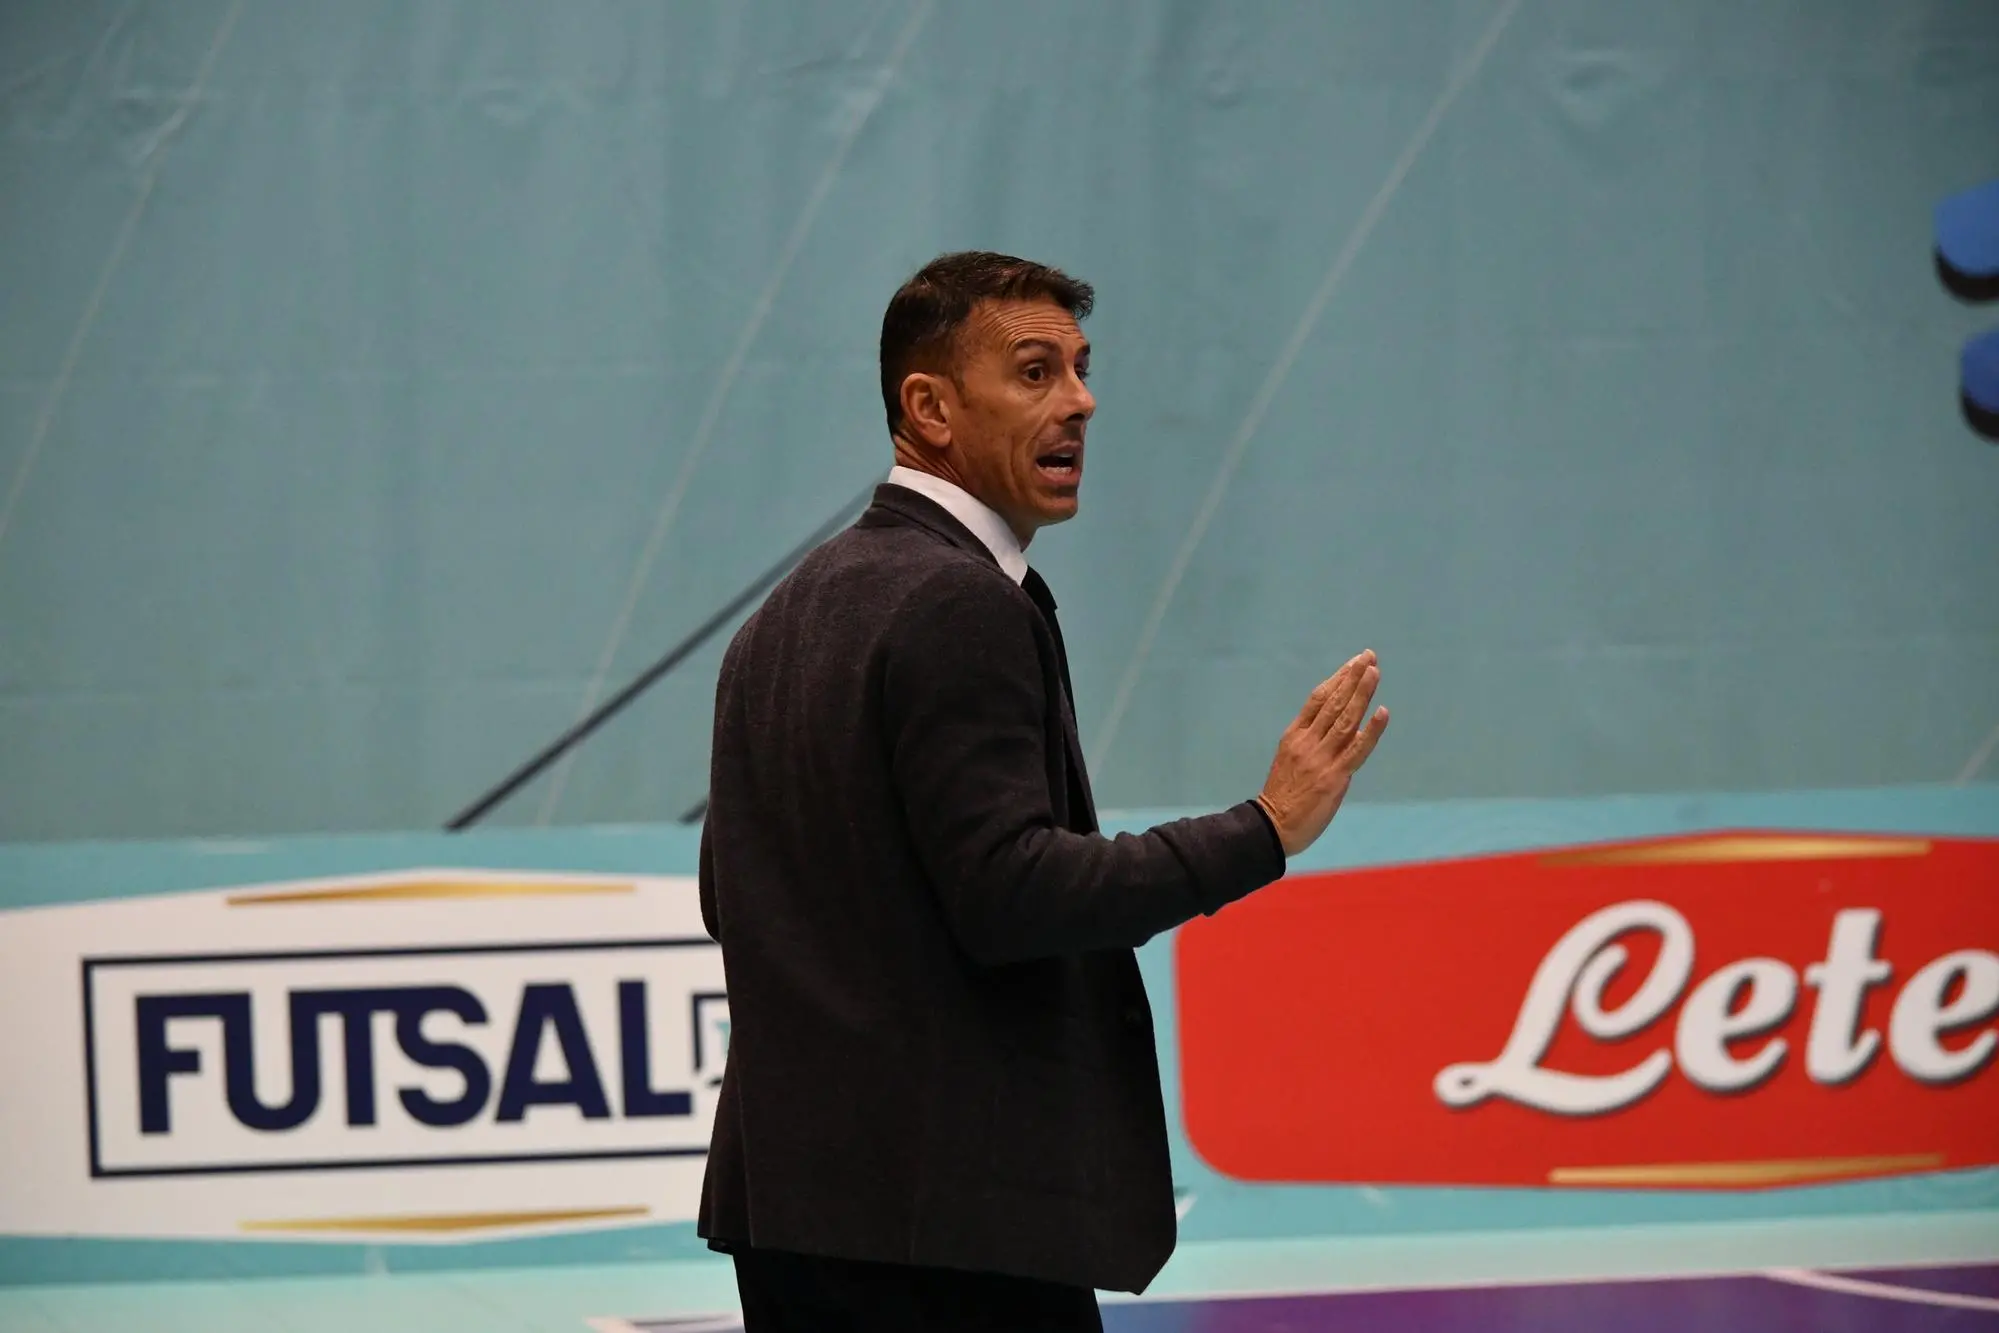 Diego Podda, allenatore lo scorso anno in Serie A del 360 GG Monastir, sarà il coordinatore tecnico